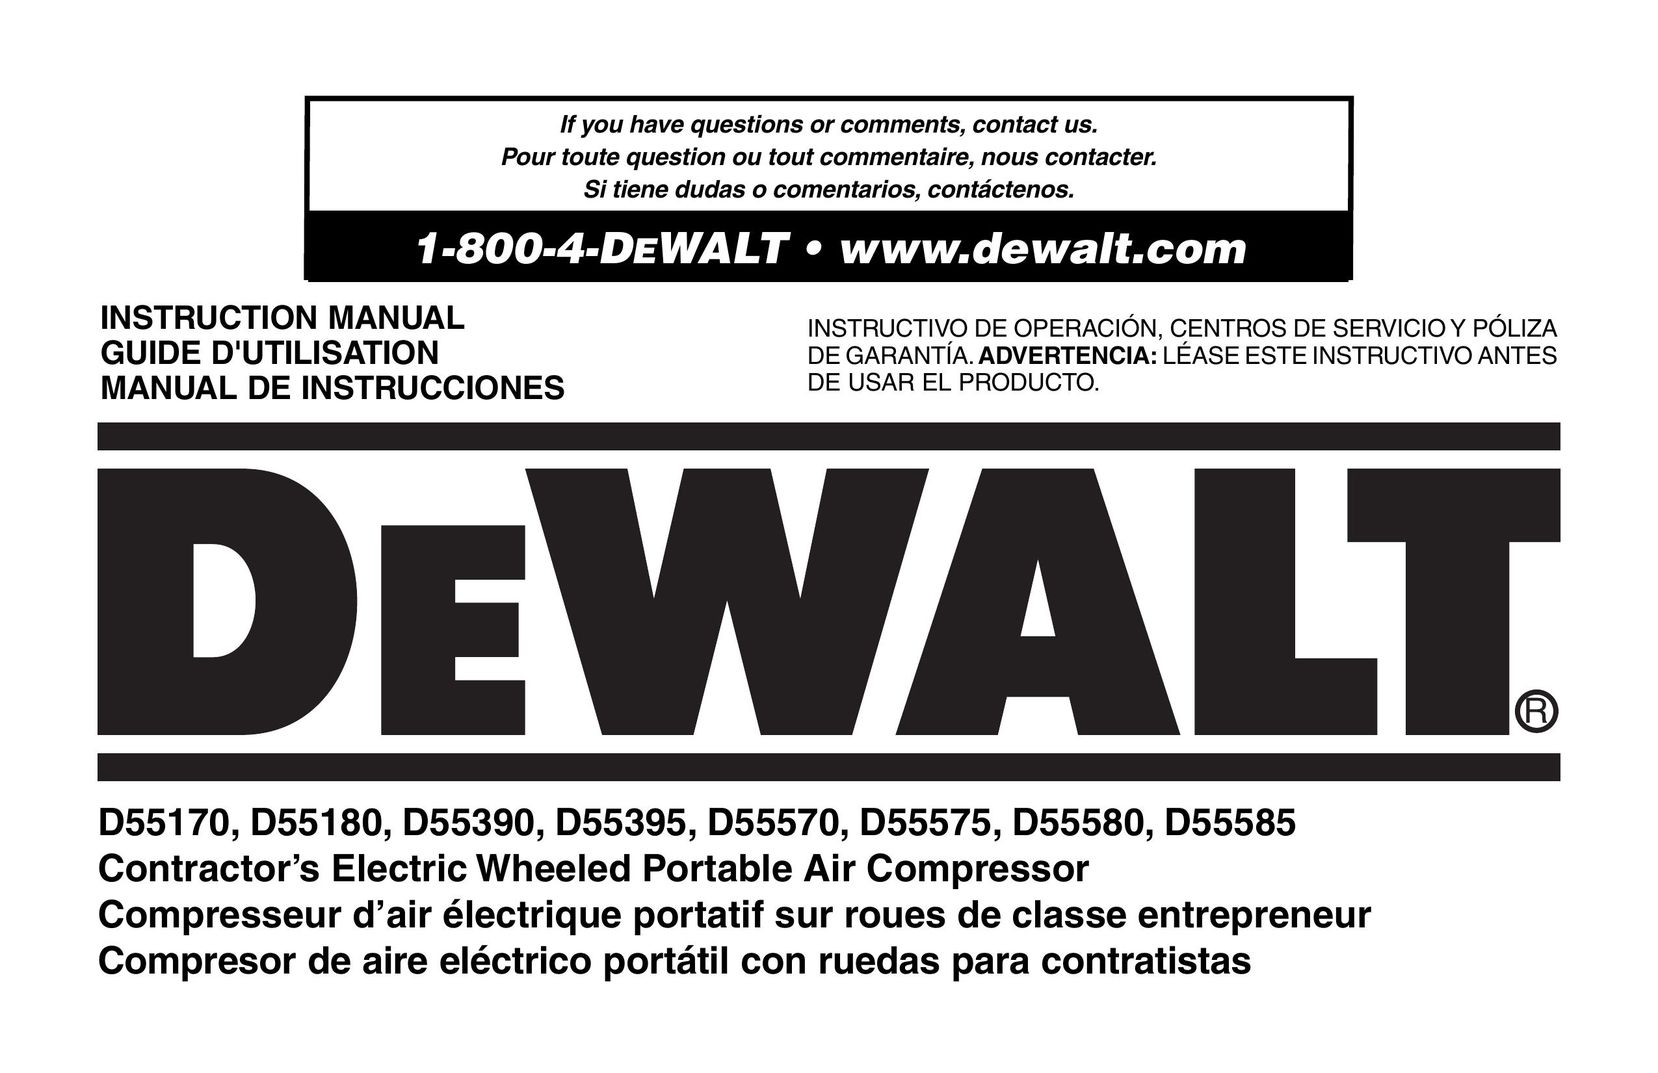 DeWalt D55575 Air Compressor User Manual